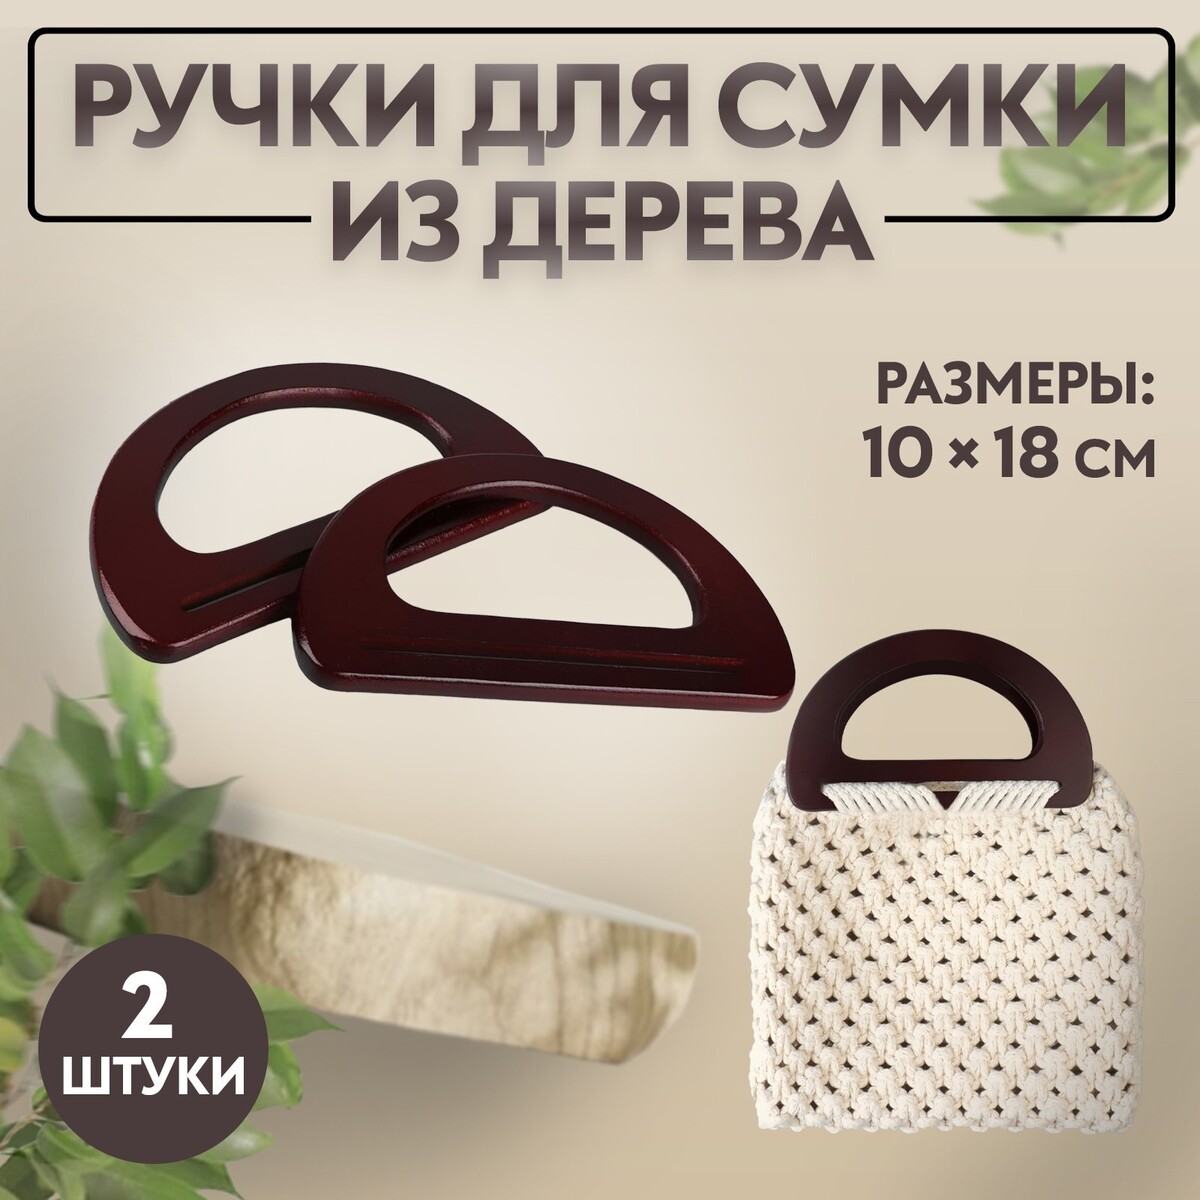 Ручки для сумки деревянные, 10 × 18 см, 2 шт, цвет коричневый ручки для сумки деревянные 10 × 18 см 2 шт коричневый